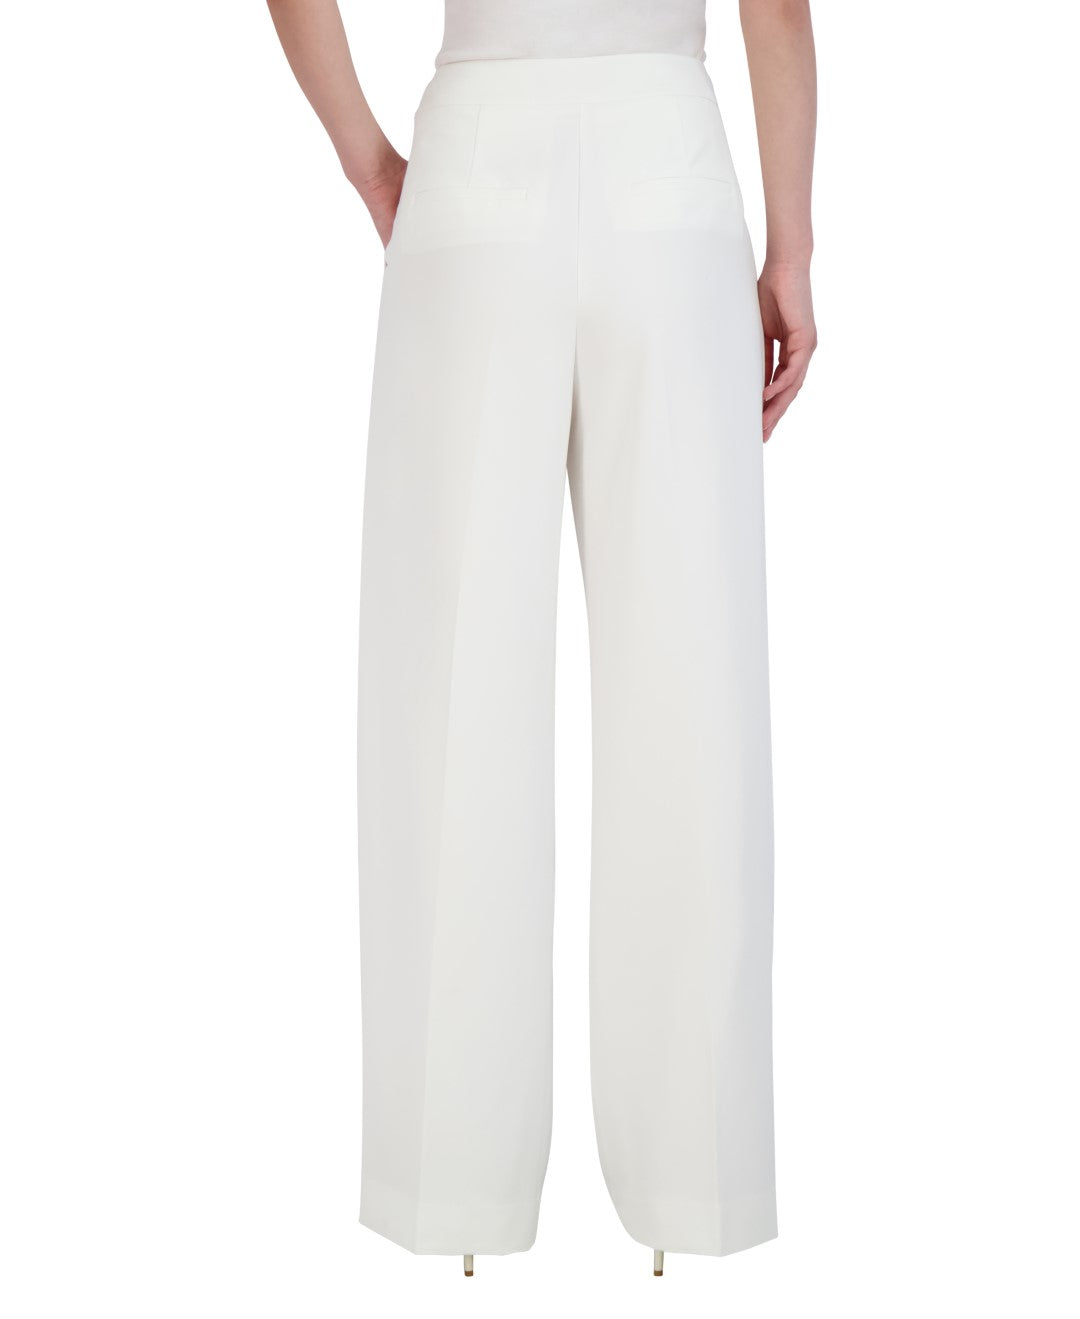 white-palazzo-trousers_2x01b06_gardenia_02